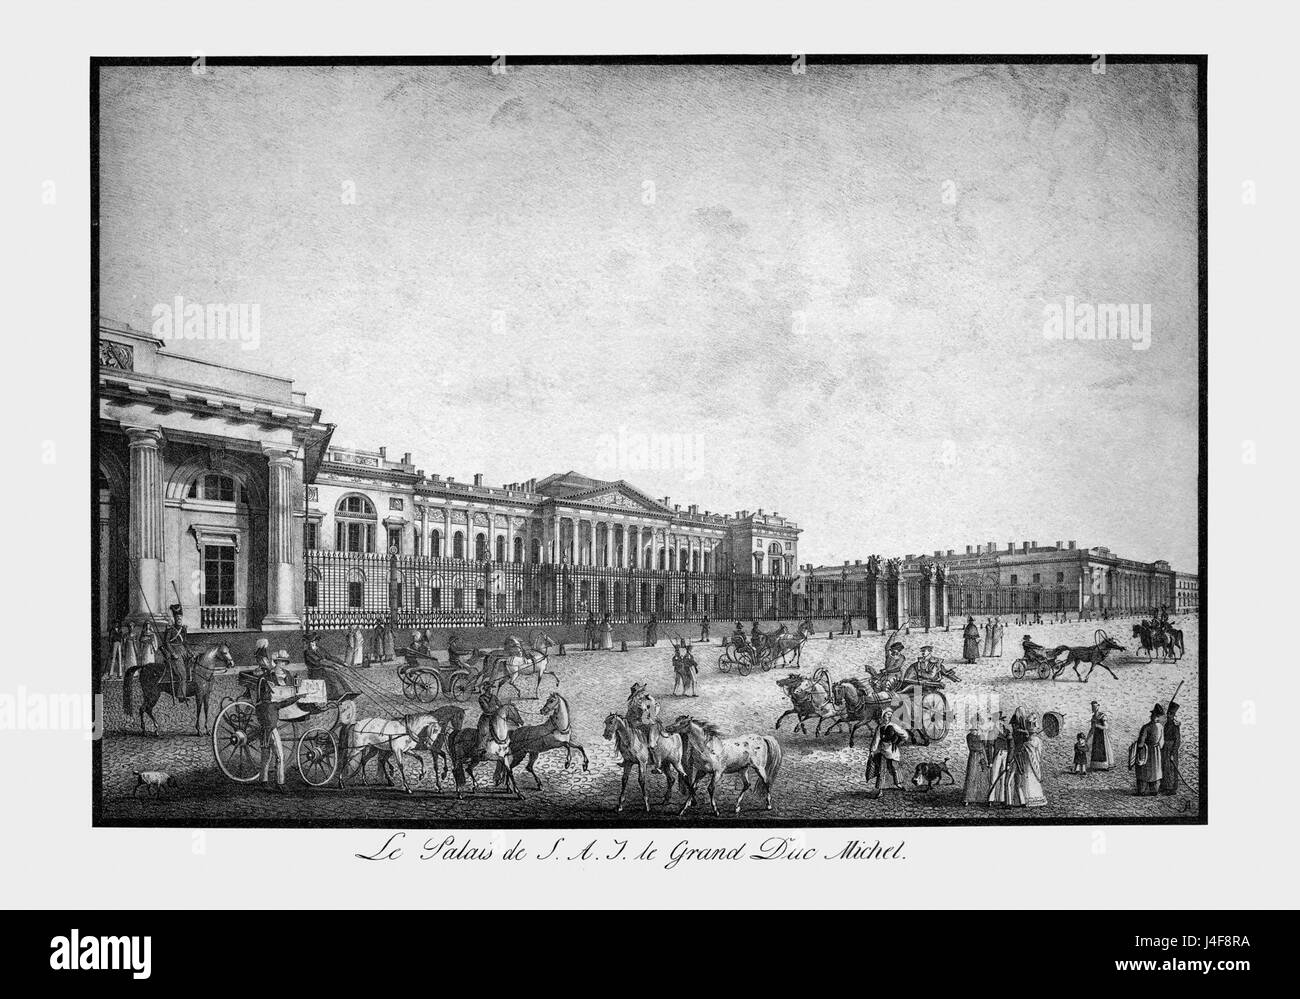 Saint Petersbourg PalaisGrandDucMichel Banque D'Images